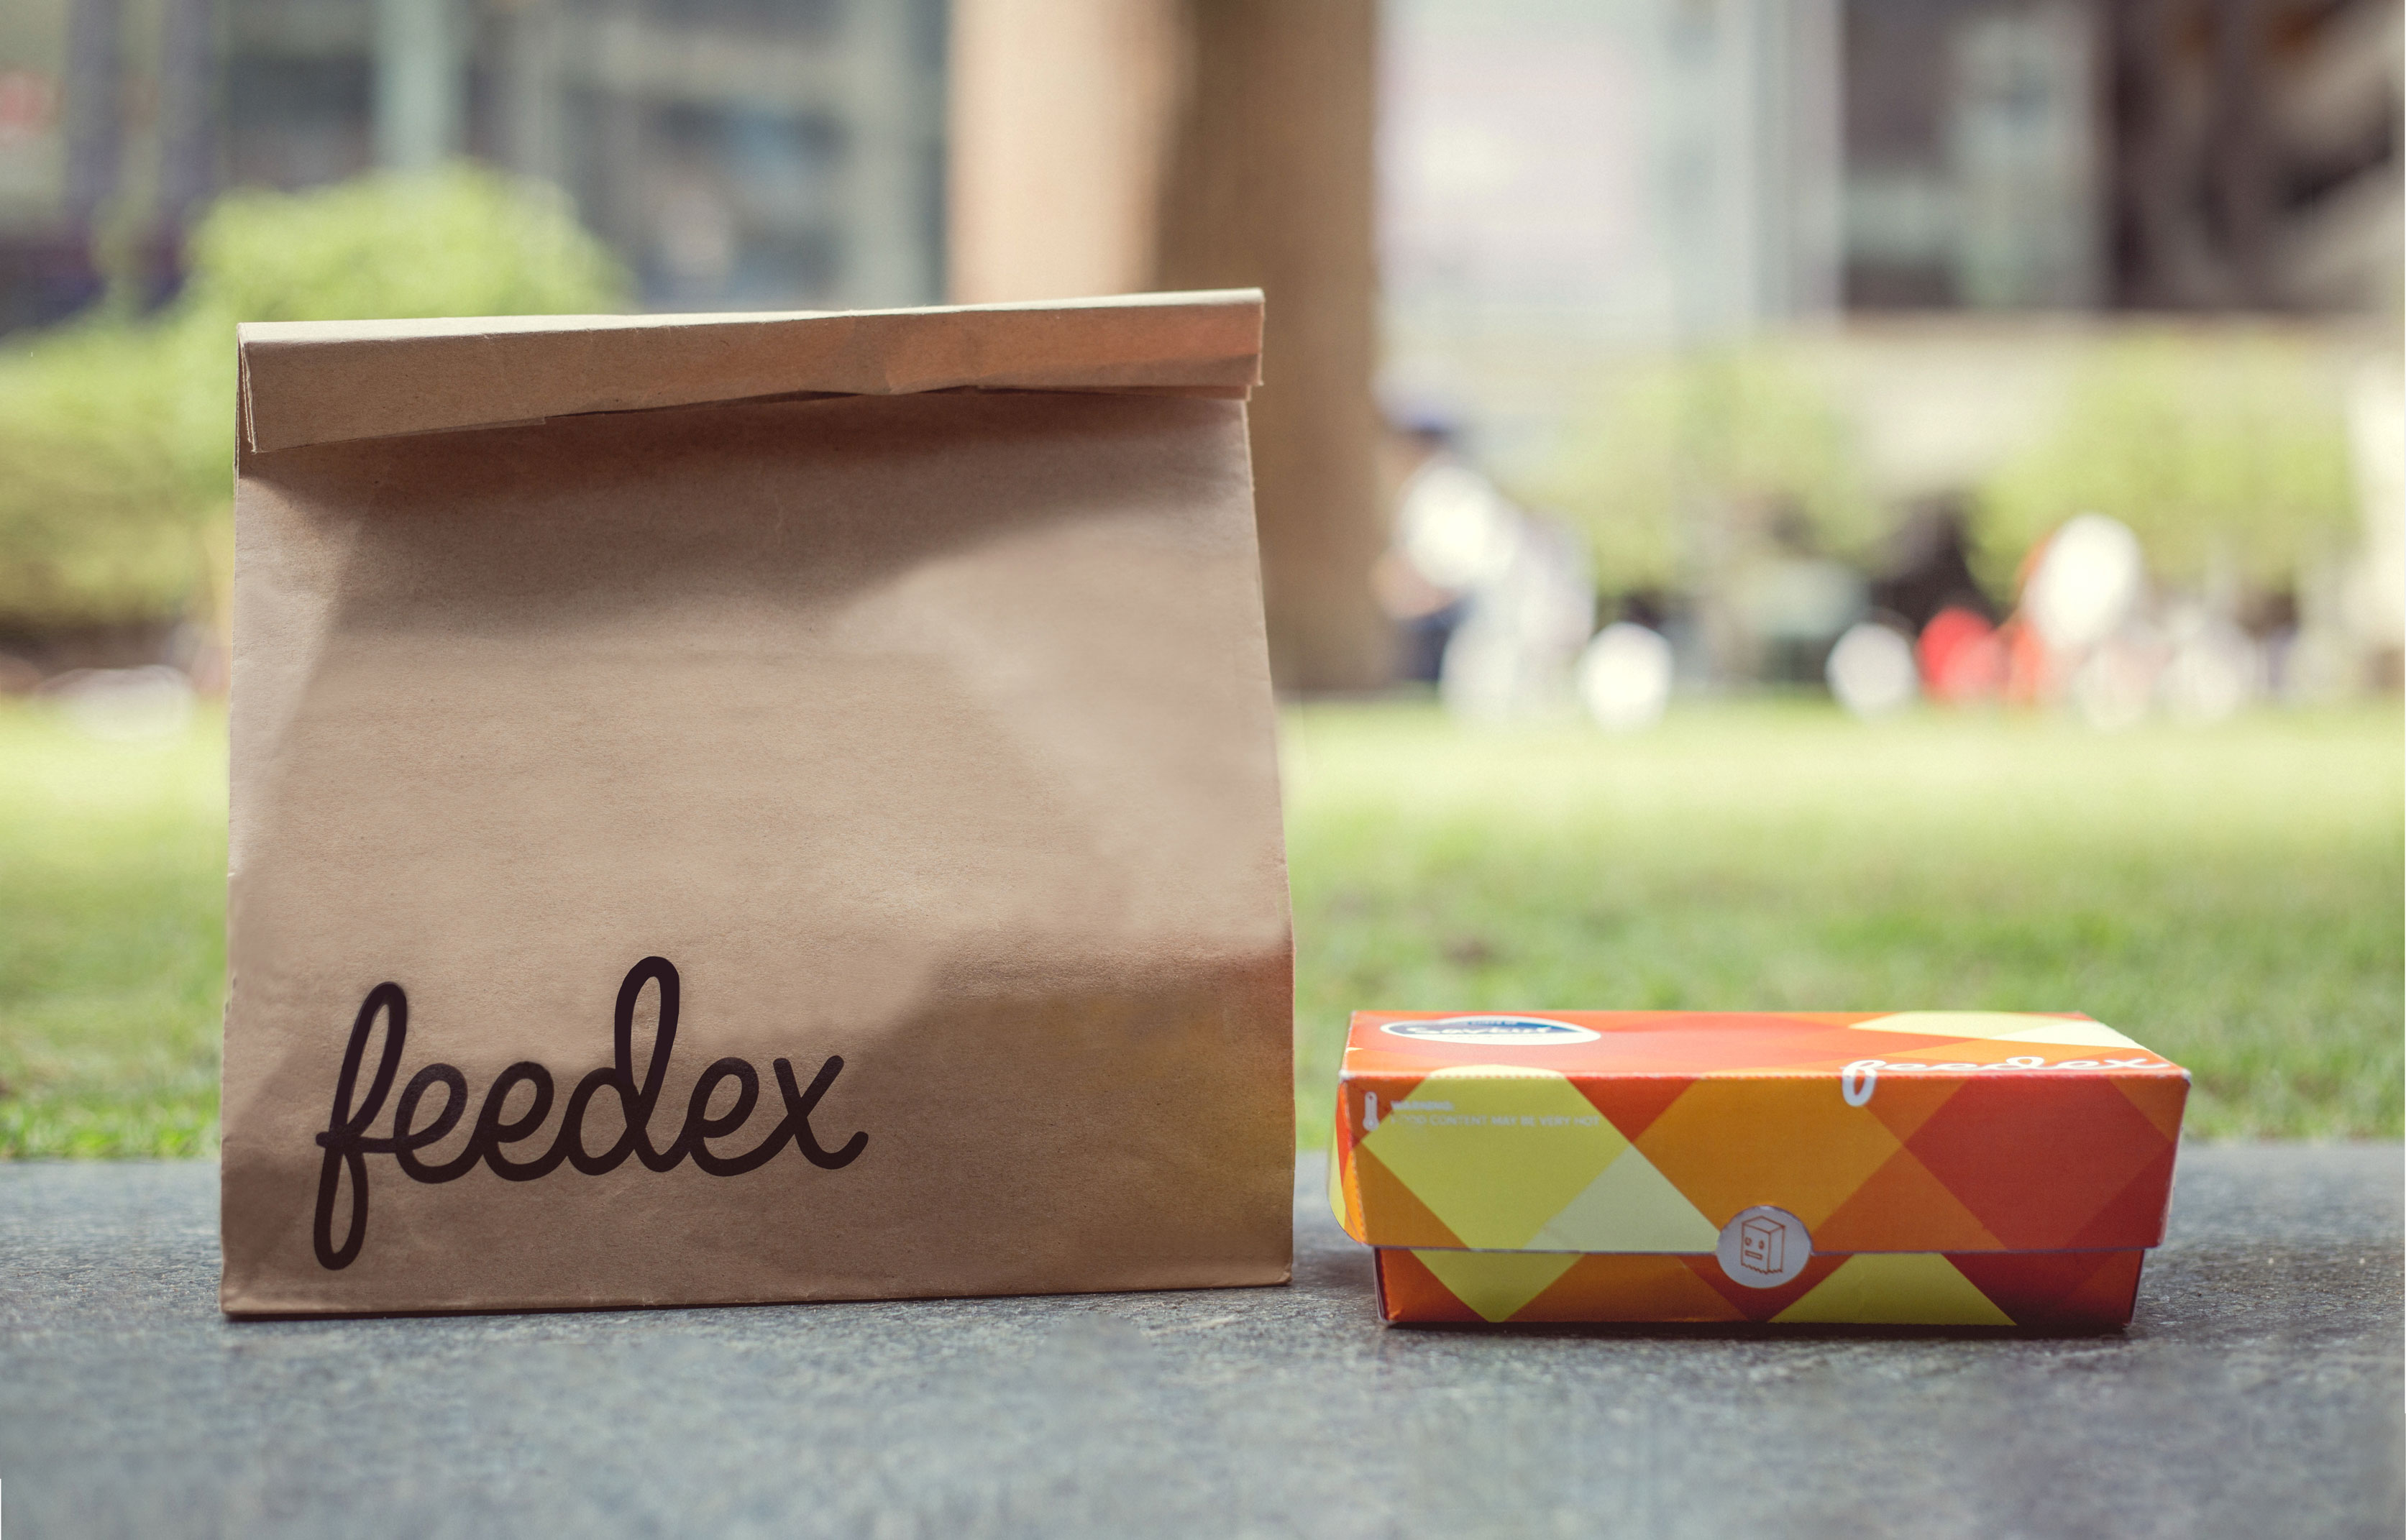 Feedex_Packaging